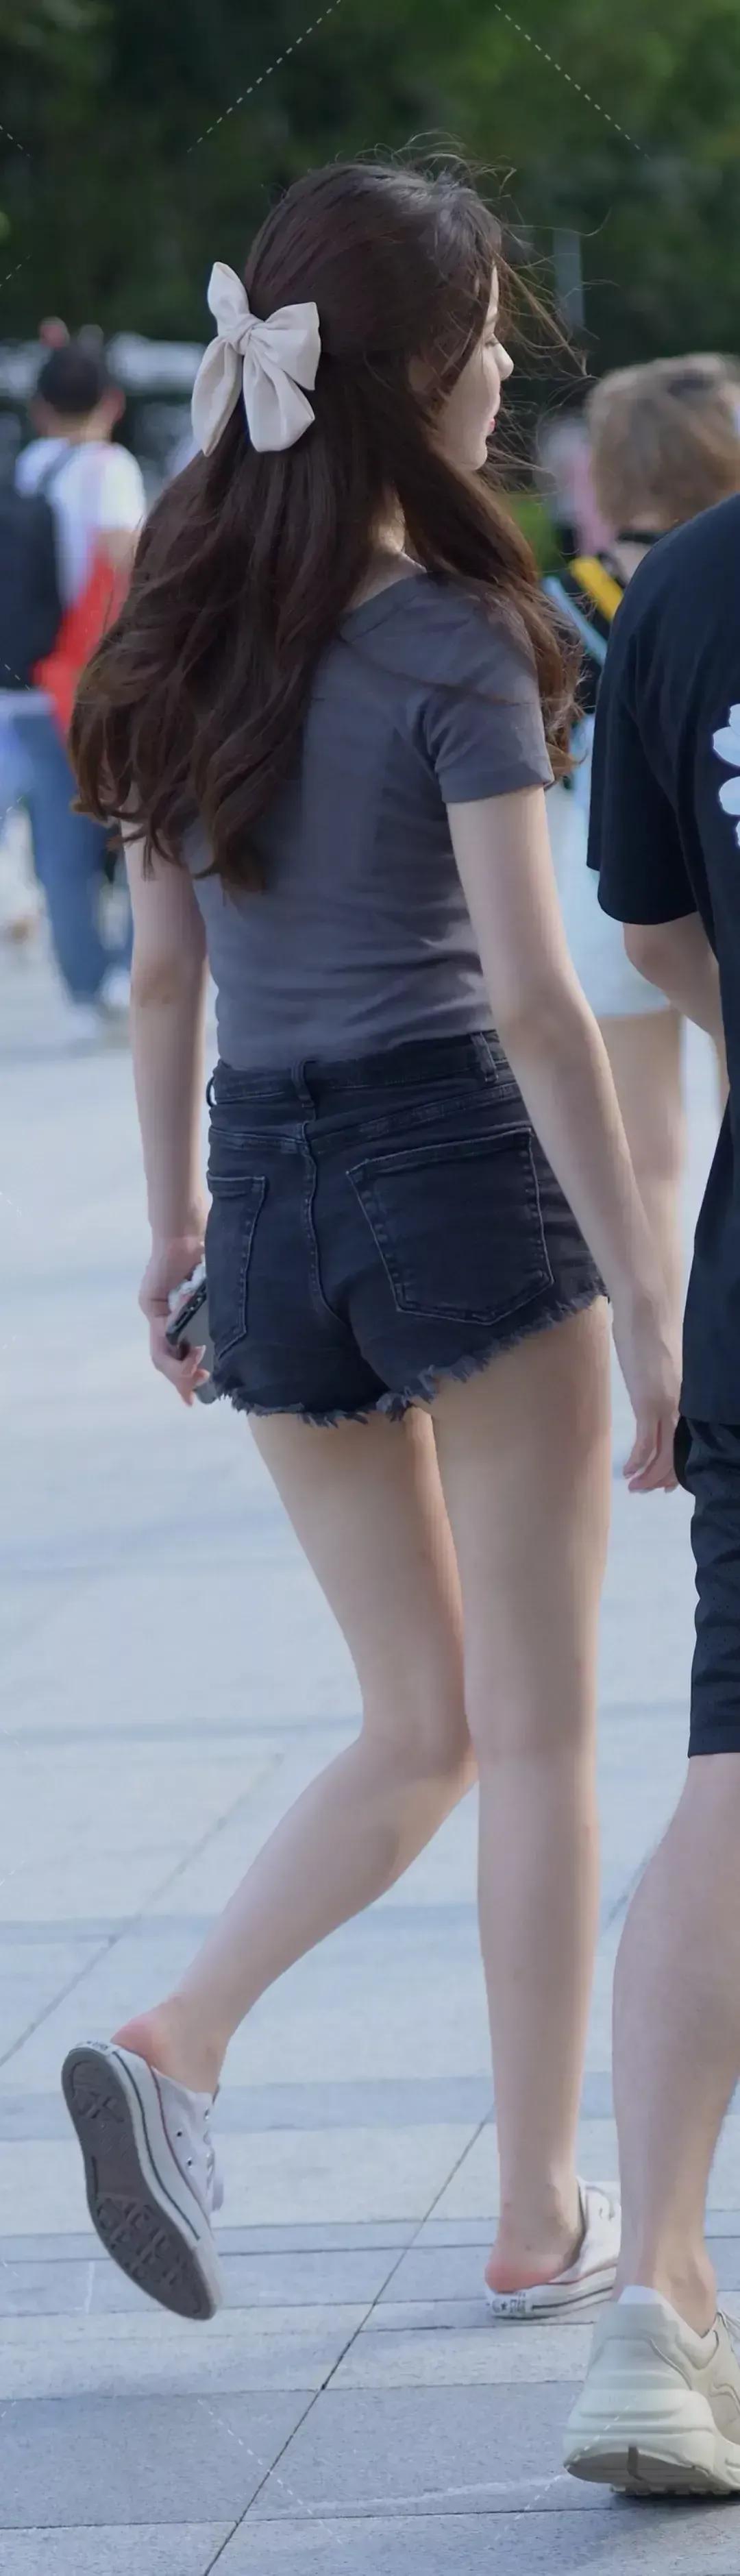 街拍/33 时尚街拍 长发及腰 白色短袖 搭配黑色超短裤的长腿美女。